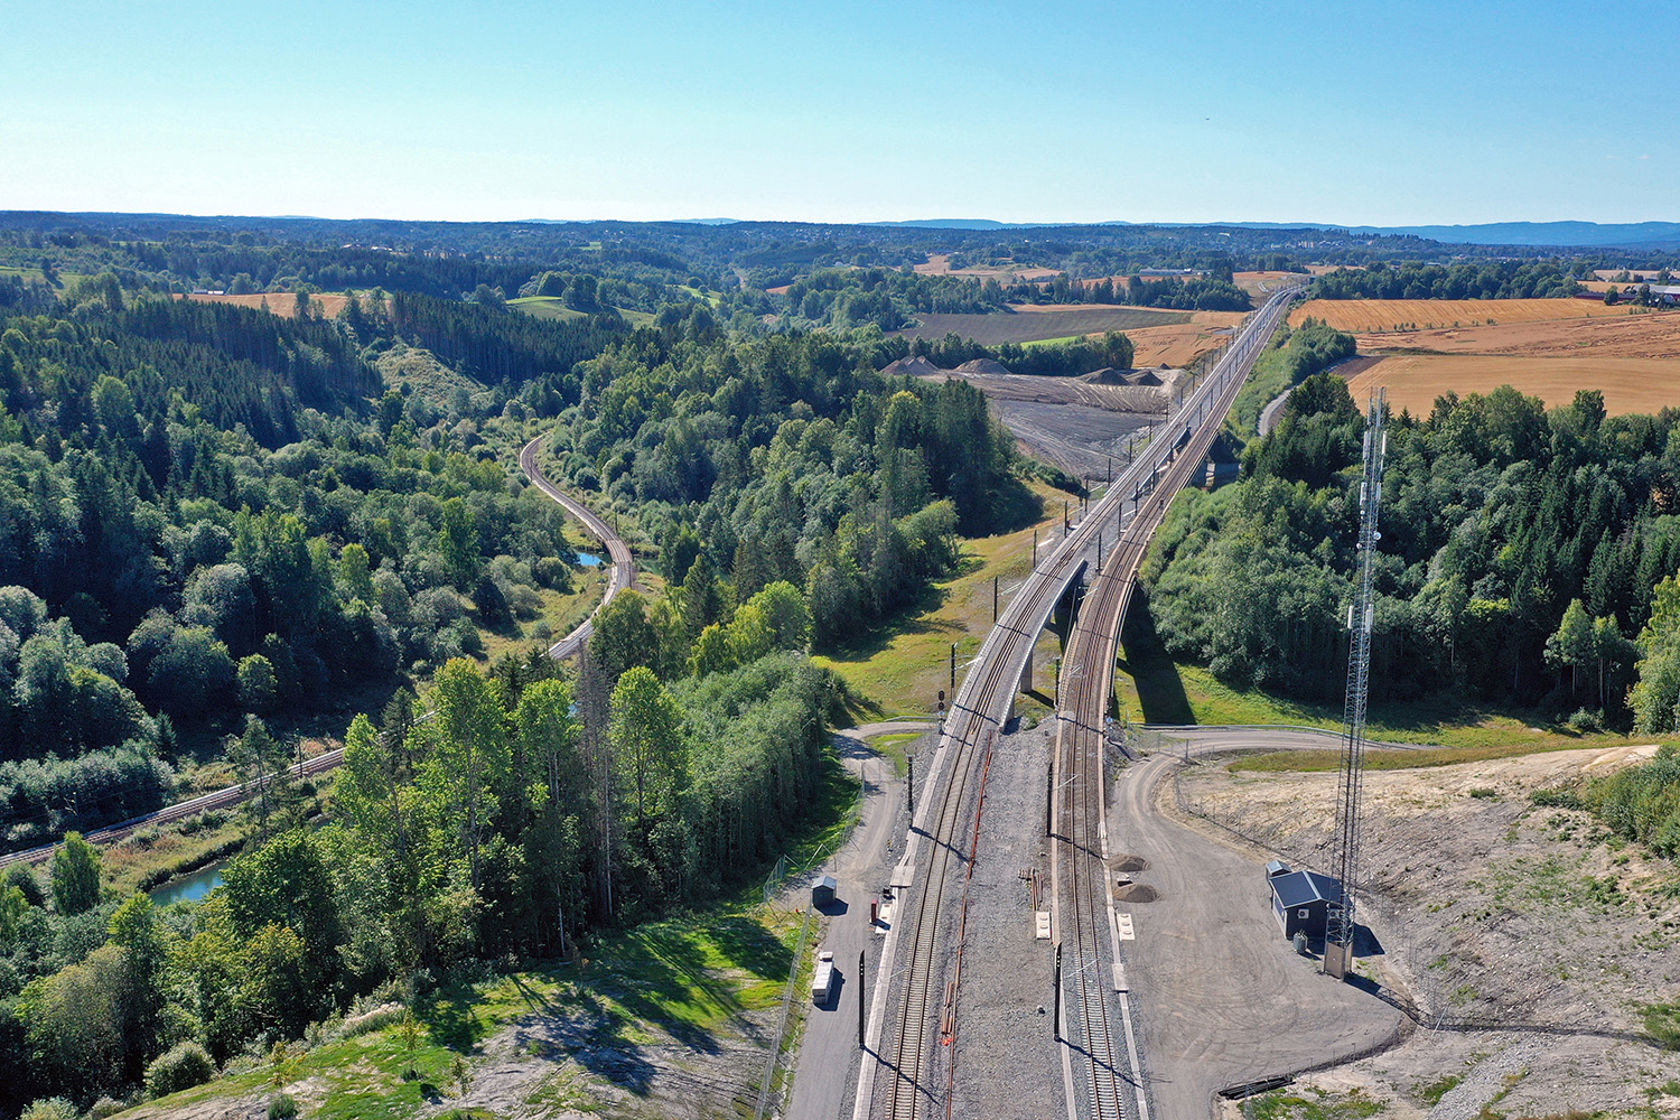 Dronefoto av dobbeltsporet omkranset av løvskog og åkre.